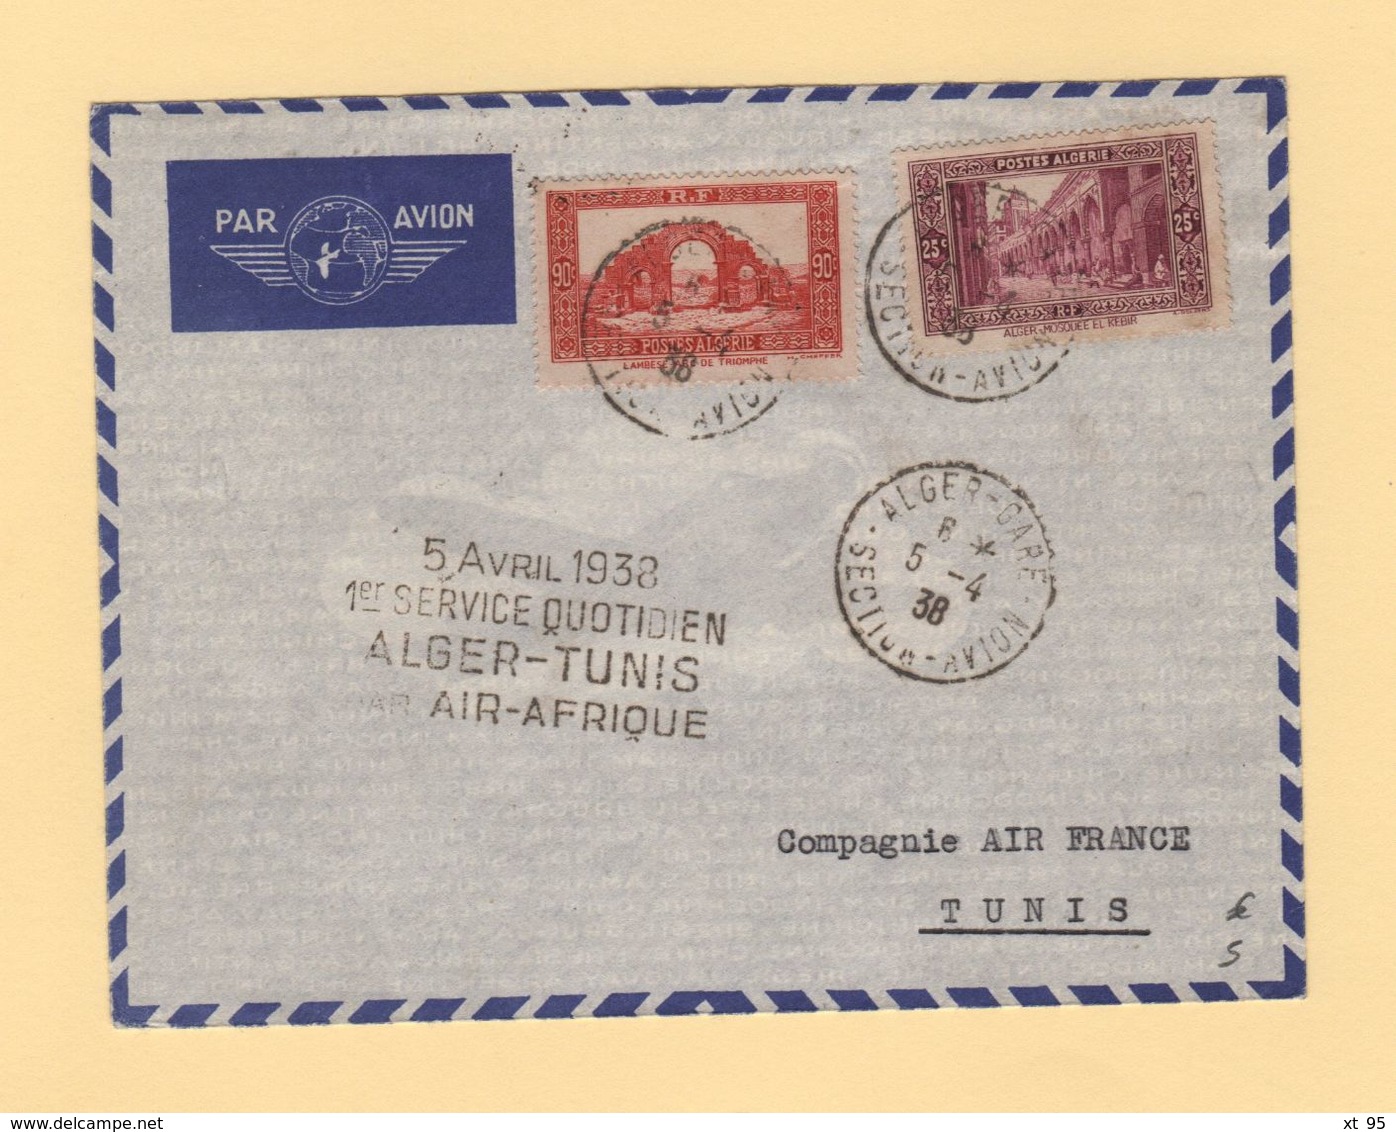 Algerie - 1er Service Quotidien Alger Tunis Par Air Afrique - 5-4-1938 - Poste Aérienne